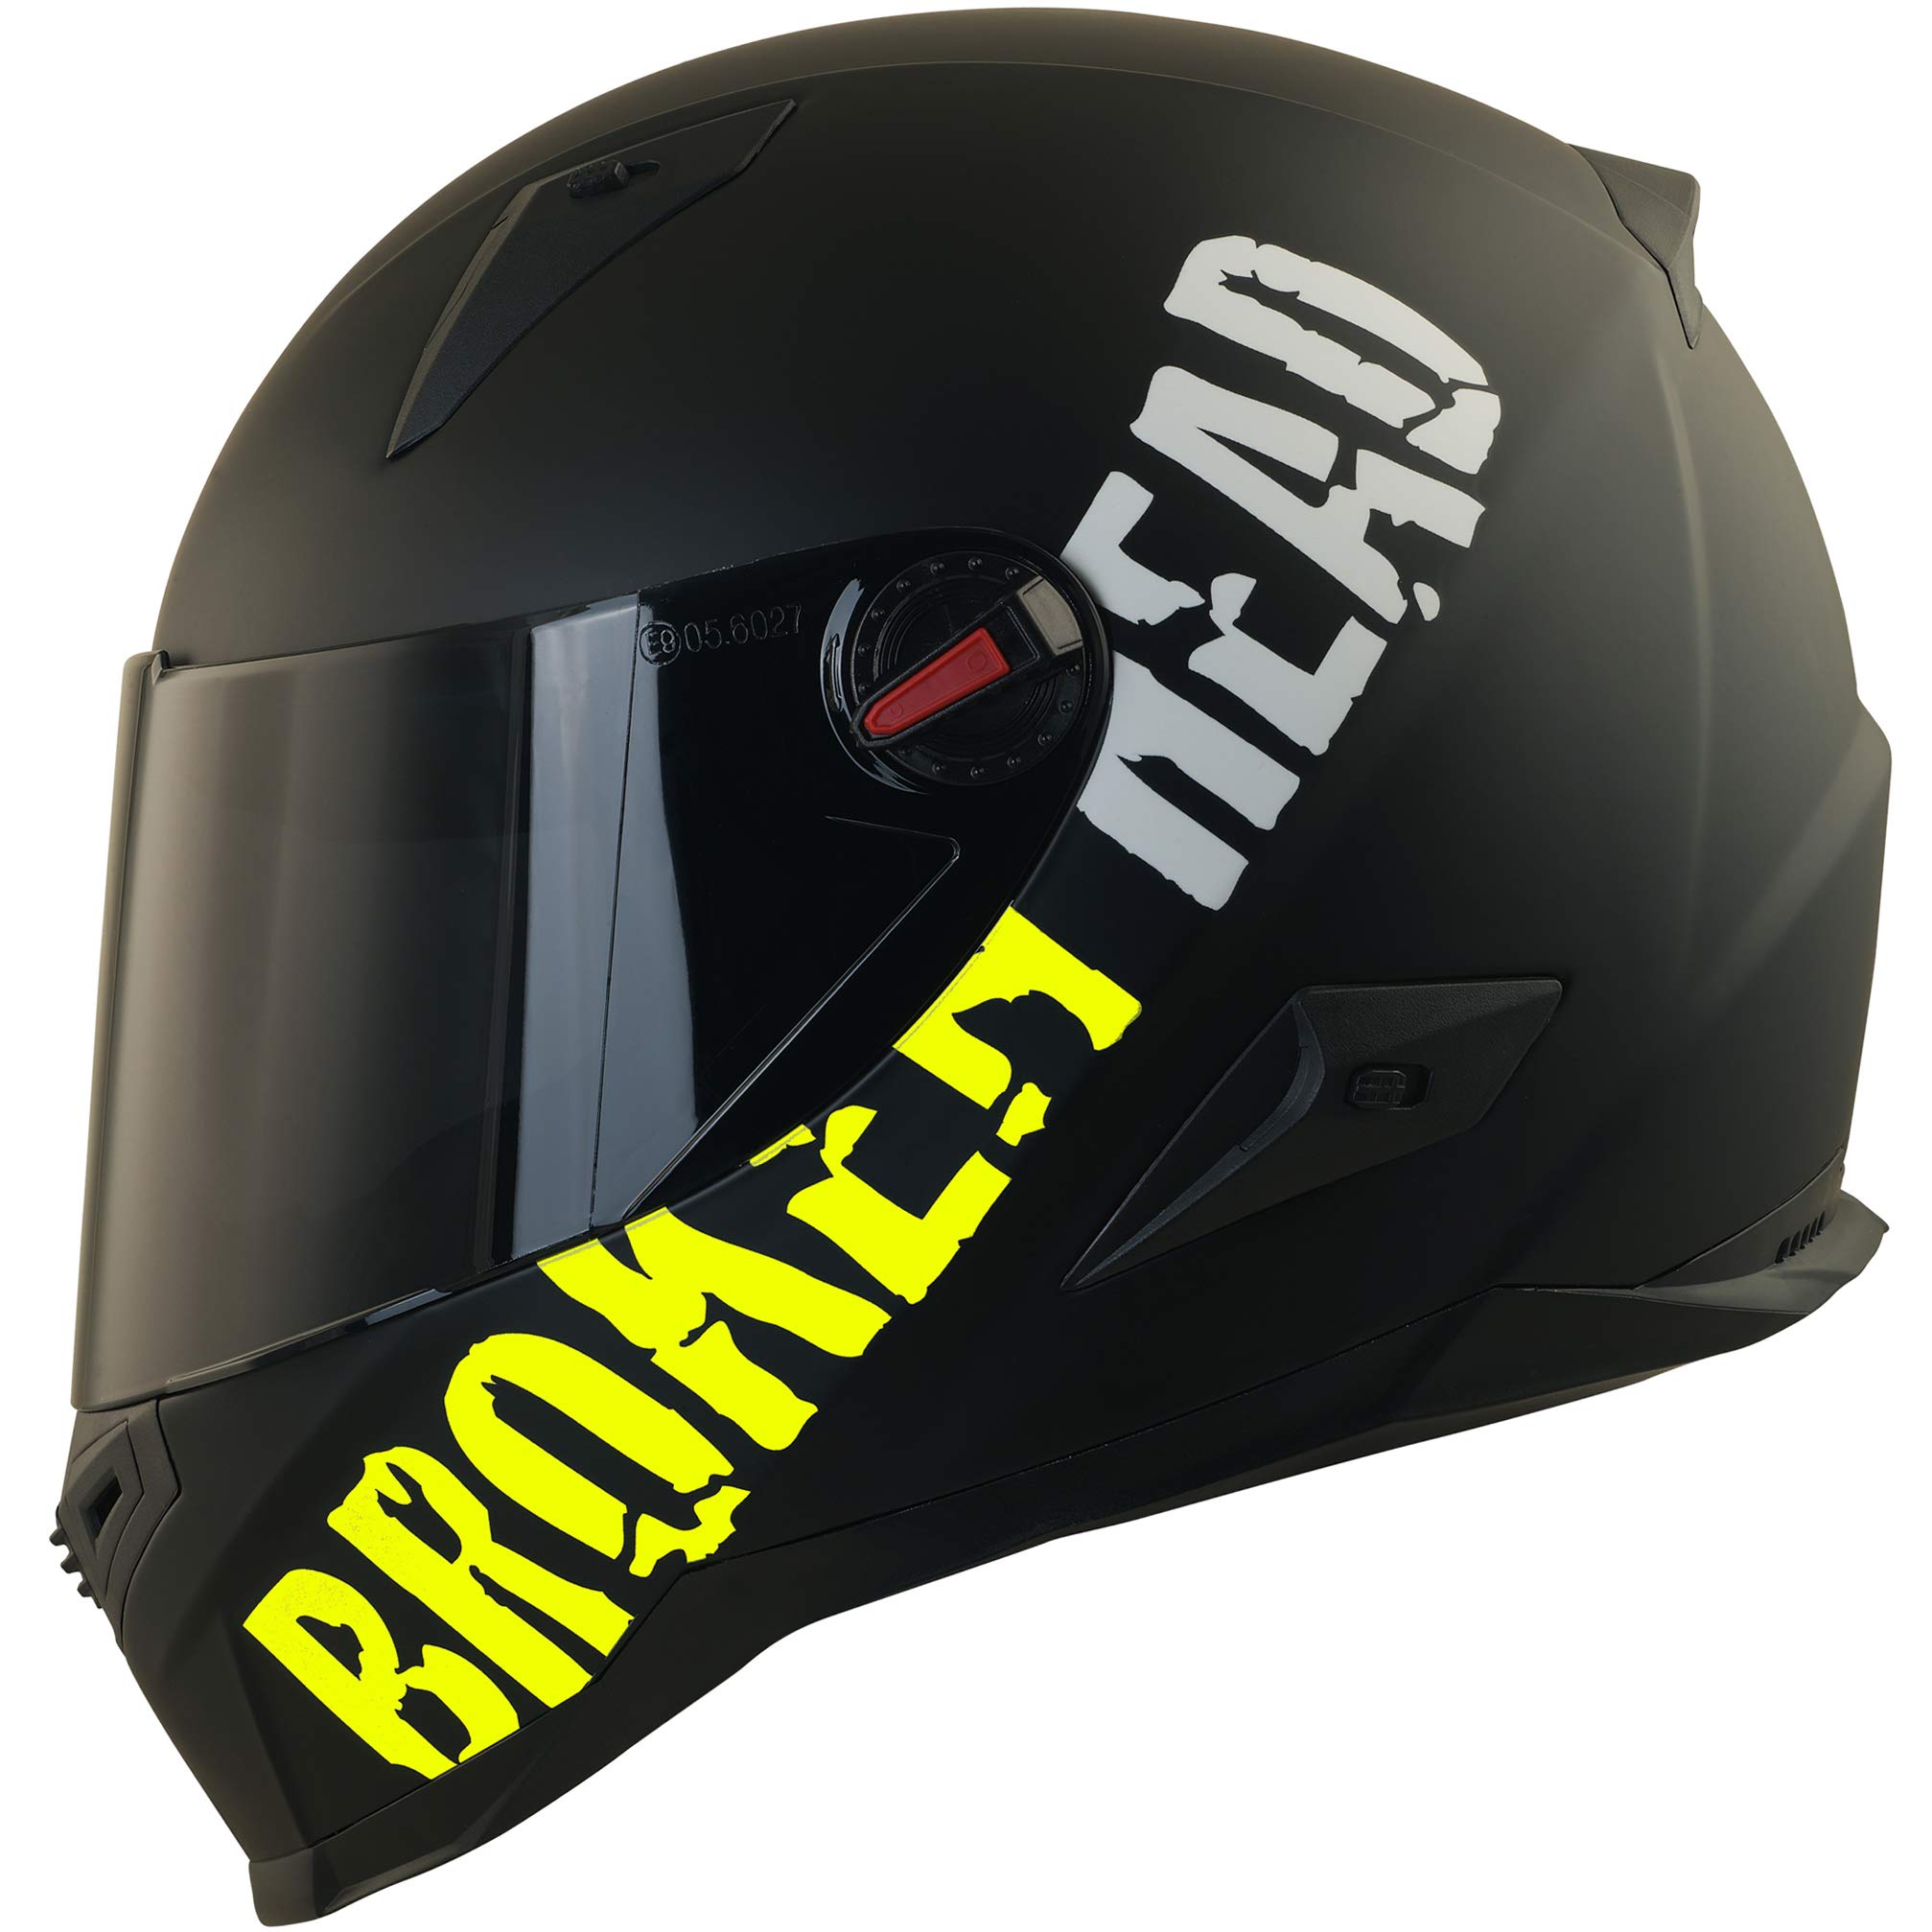 Broken Head BeProud Neon Gelb Ltd. - Motorradhelm Mit 2 Visieren (Schwarzes Visier + Klares Visier) Integralhelm Mattschwarz-Gelb - Größe L (59-60 cm)